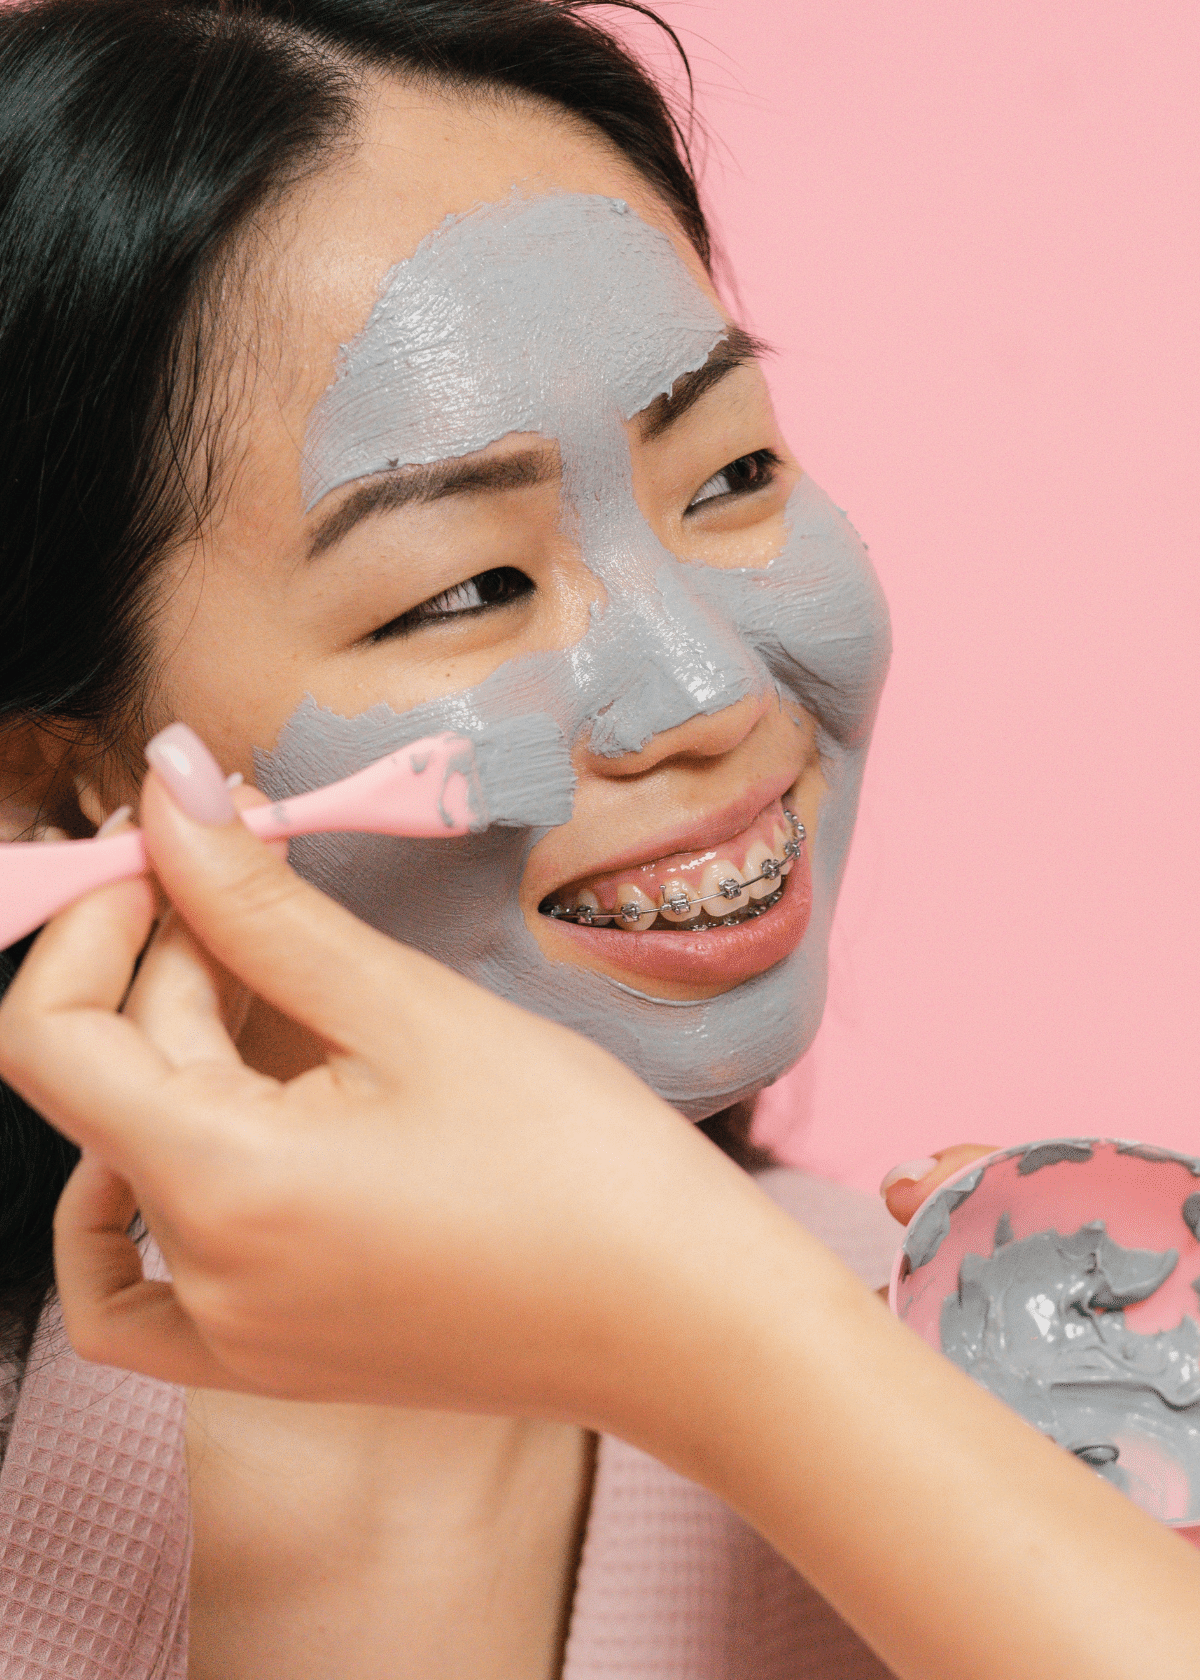 Applying Face Masks for Acne